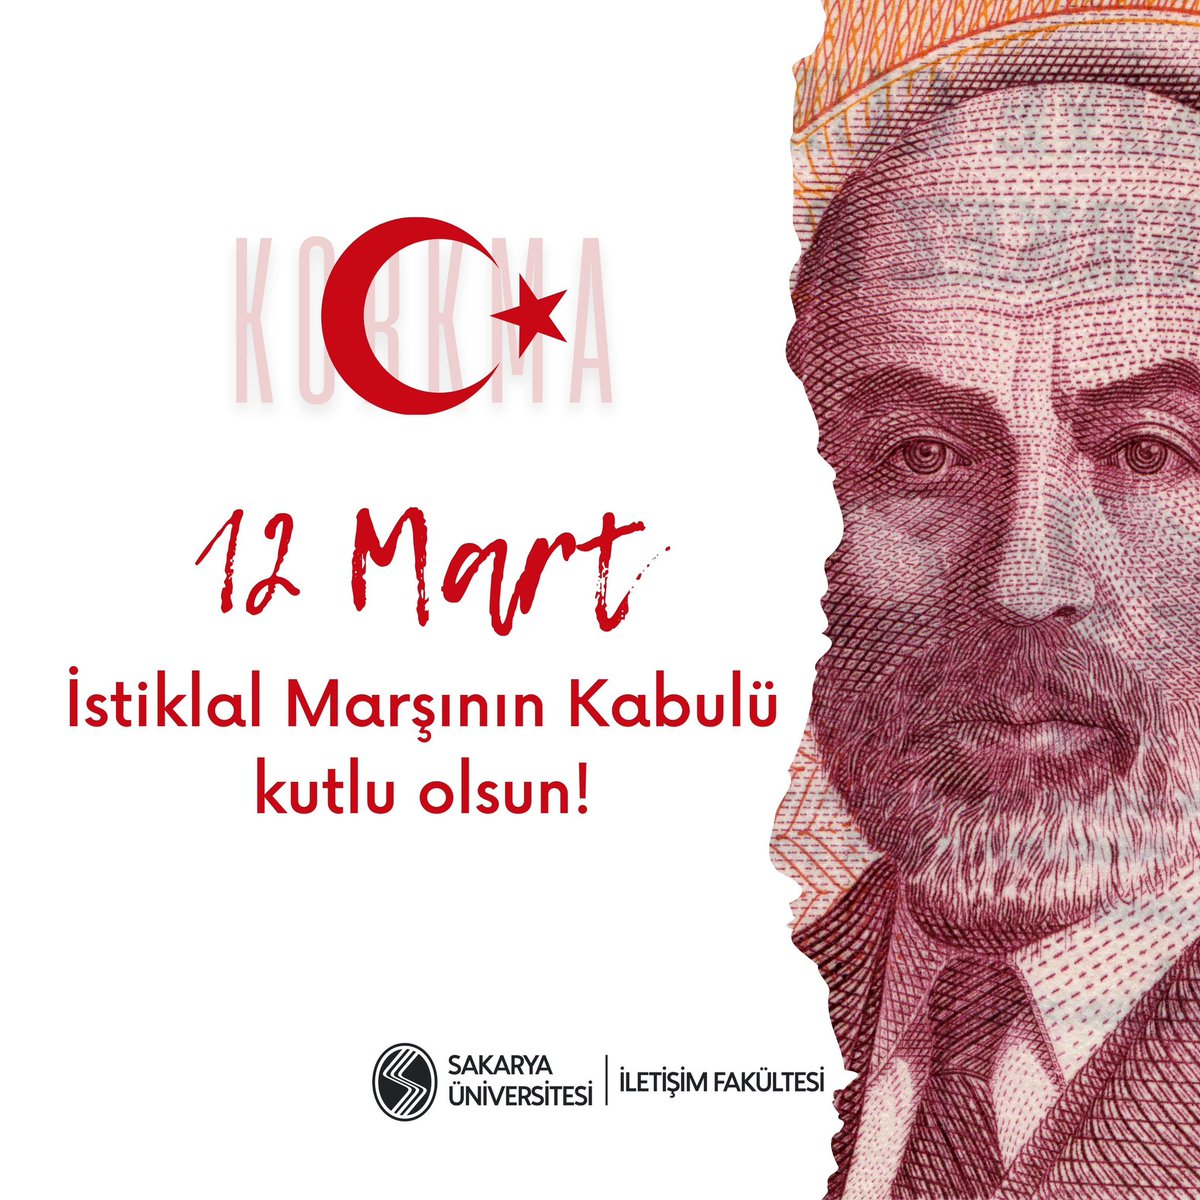 Bugün 12 Mart, İstiklal Marşımızın Türkiye Büyük Millet Meclisi tarafından kabulünün 103. yıl dönümü. Bu vesileyle, millî şairimiz Mehmet Akif Ersoy'u ve bu eşsiz eseri bize armağan eden tüm kahramanları saygıyla anıyoruz.🇹🇷 12 Mart İstiklal Marşı'nın Kabulü Kutlu Olsun!